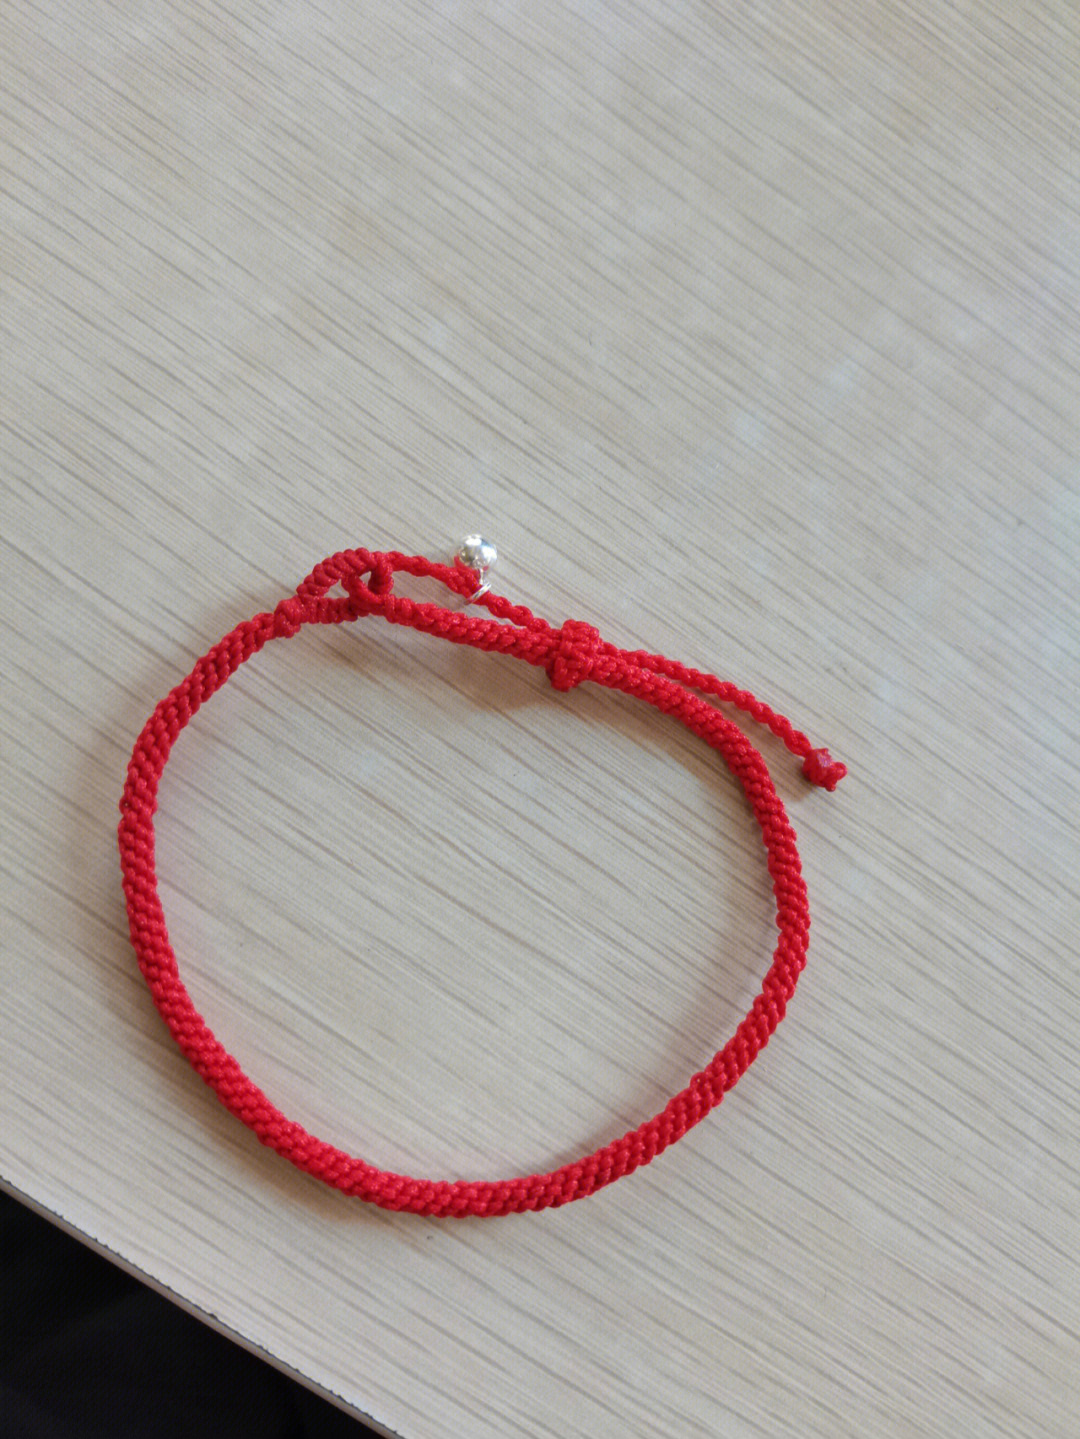 一根红绳项链编法图片